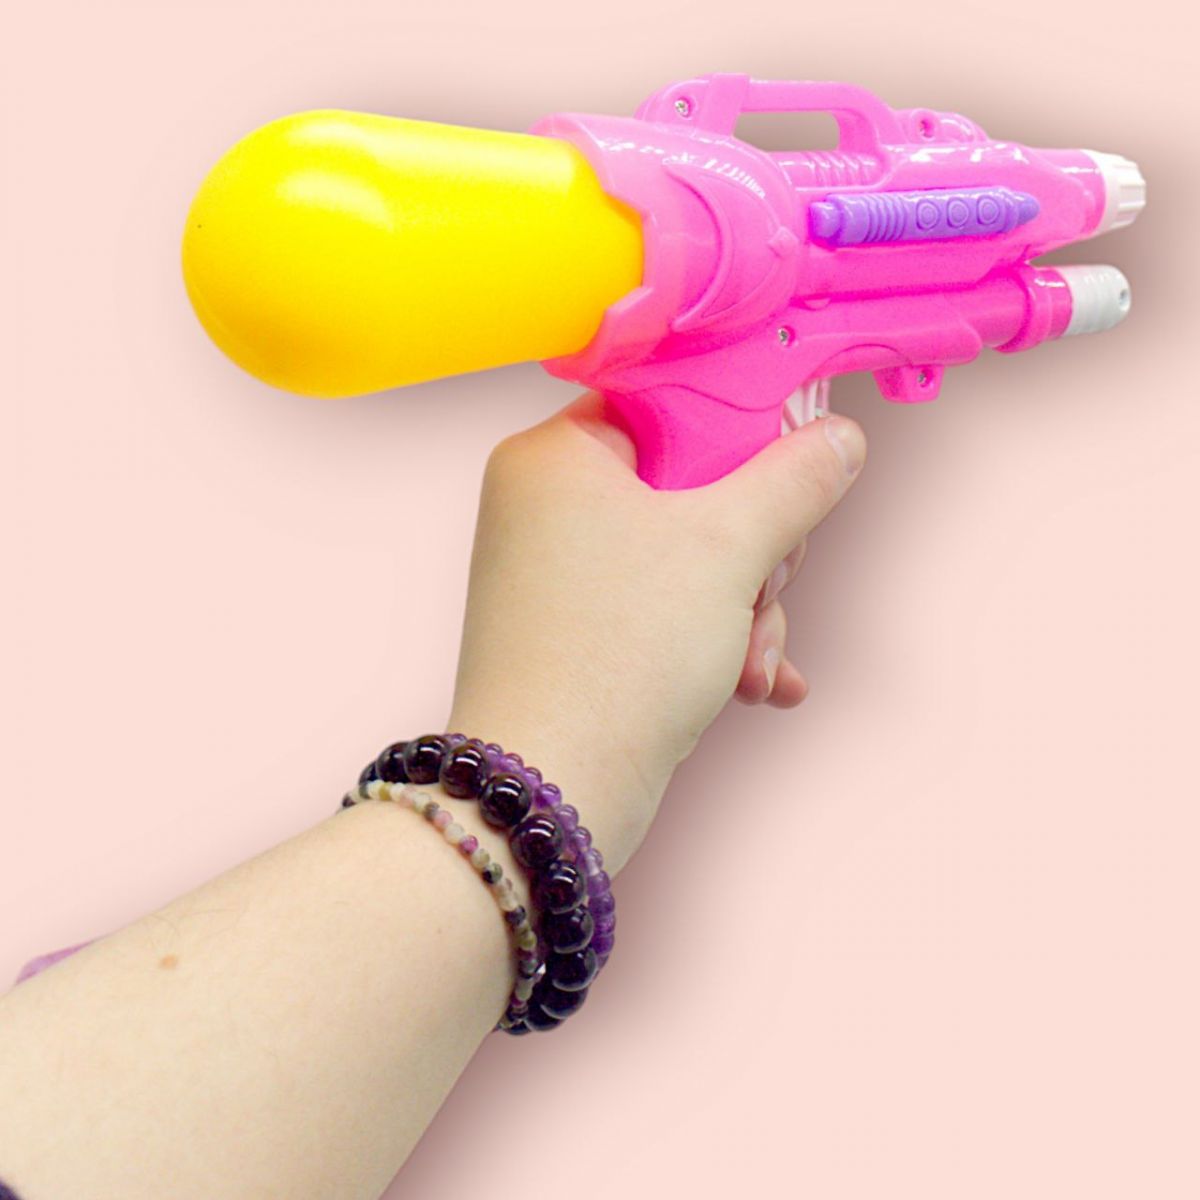 Водный пистолет (пластиковый), 25 см, розовый